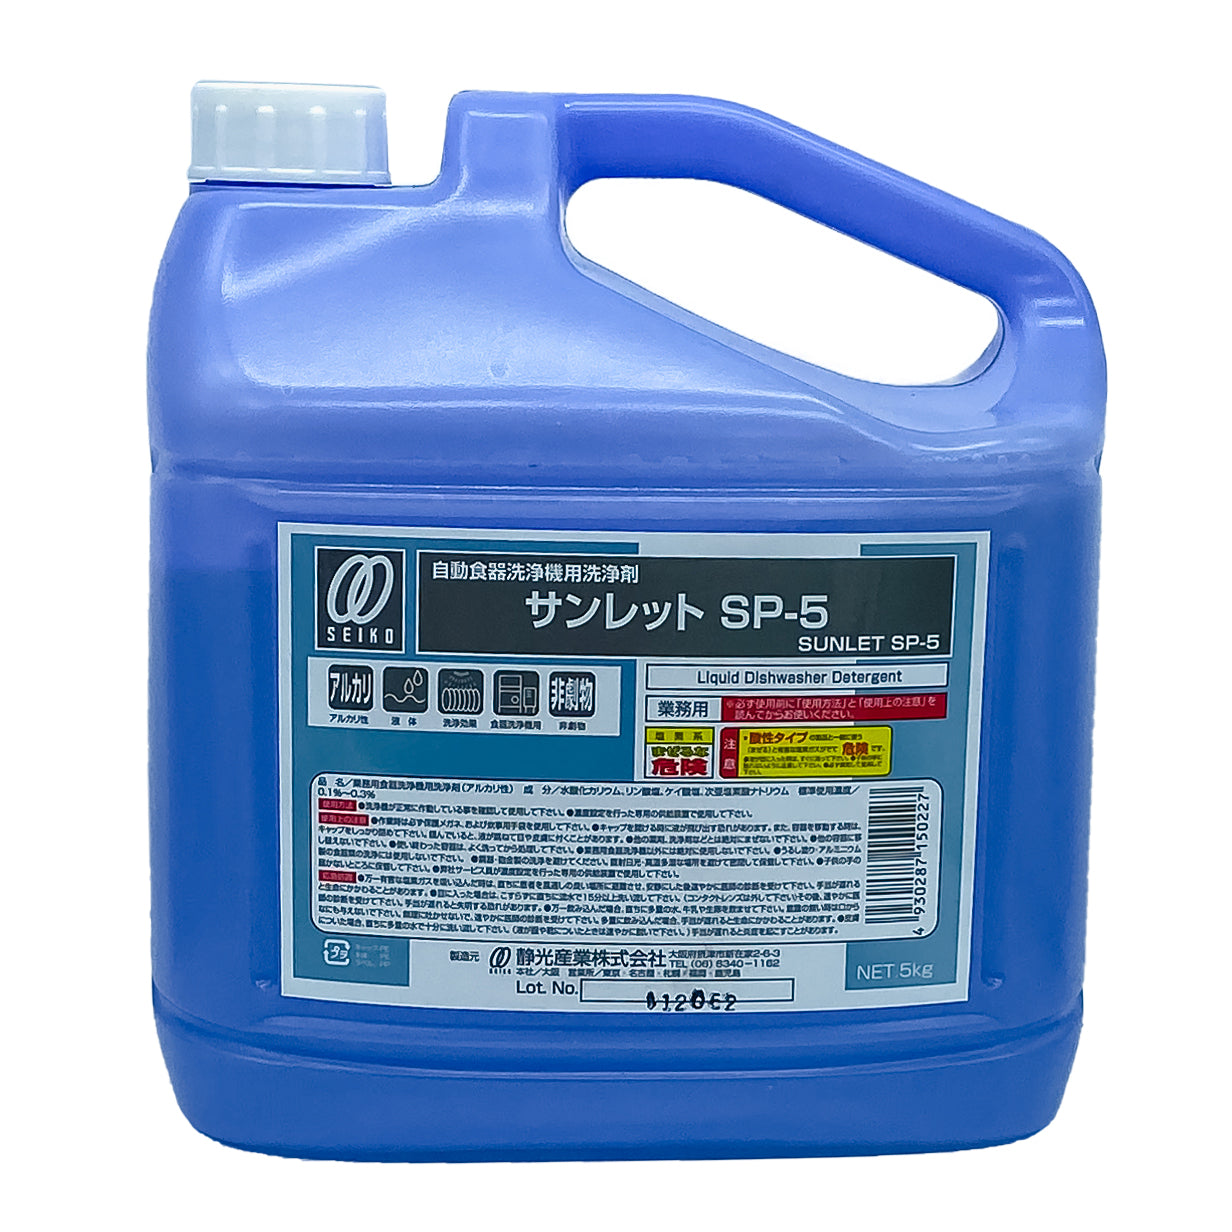 【洗浄機用洗剤】ケース販売 静光産業 サンレット SP-5 5kg 2個セット